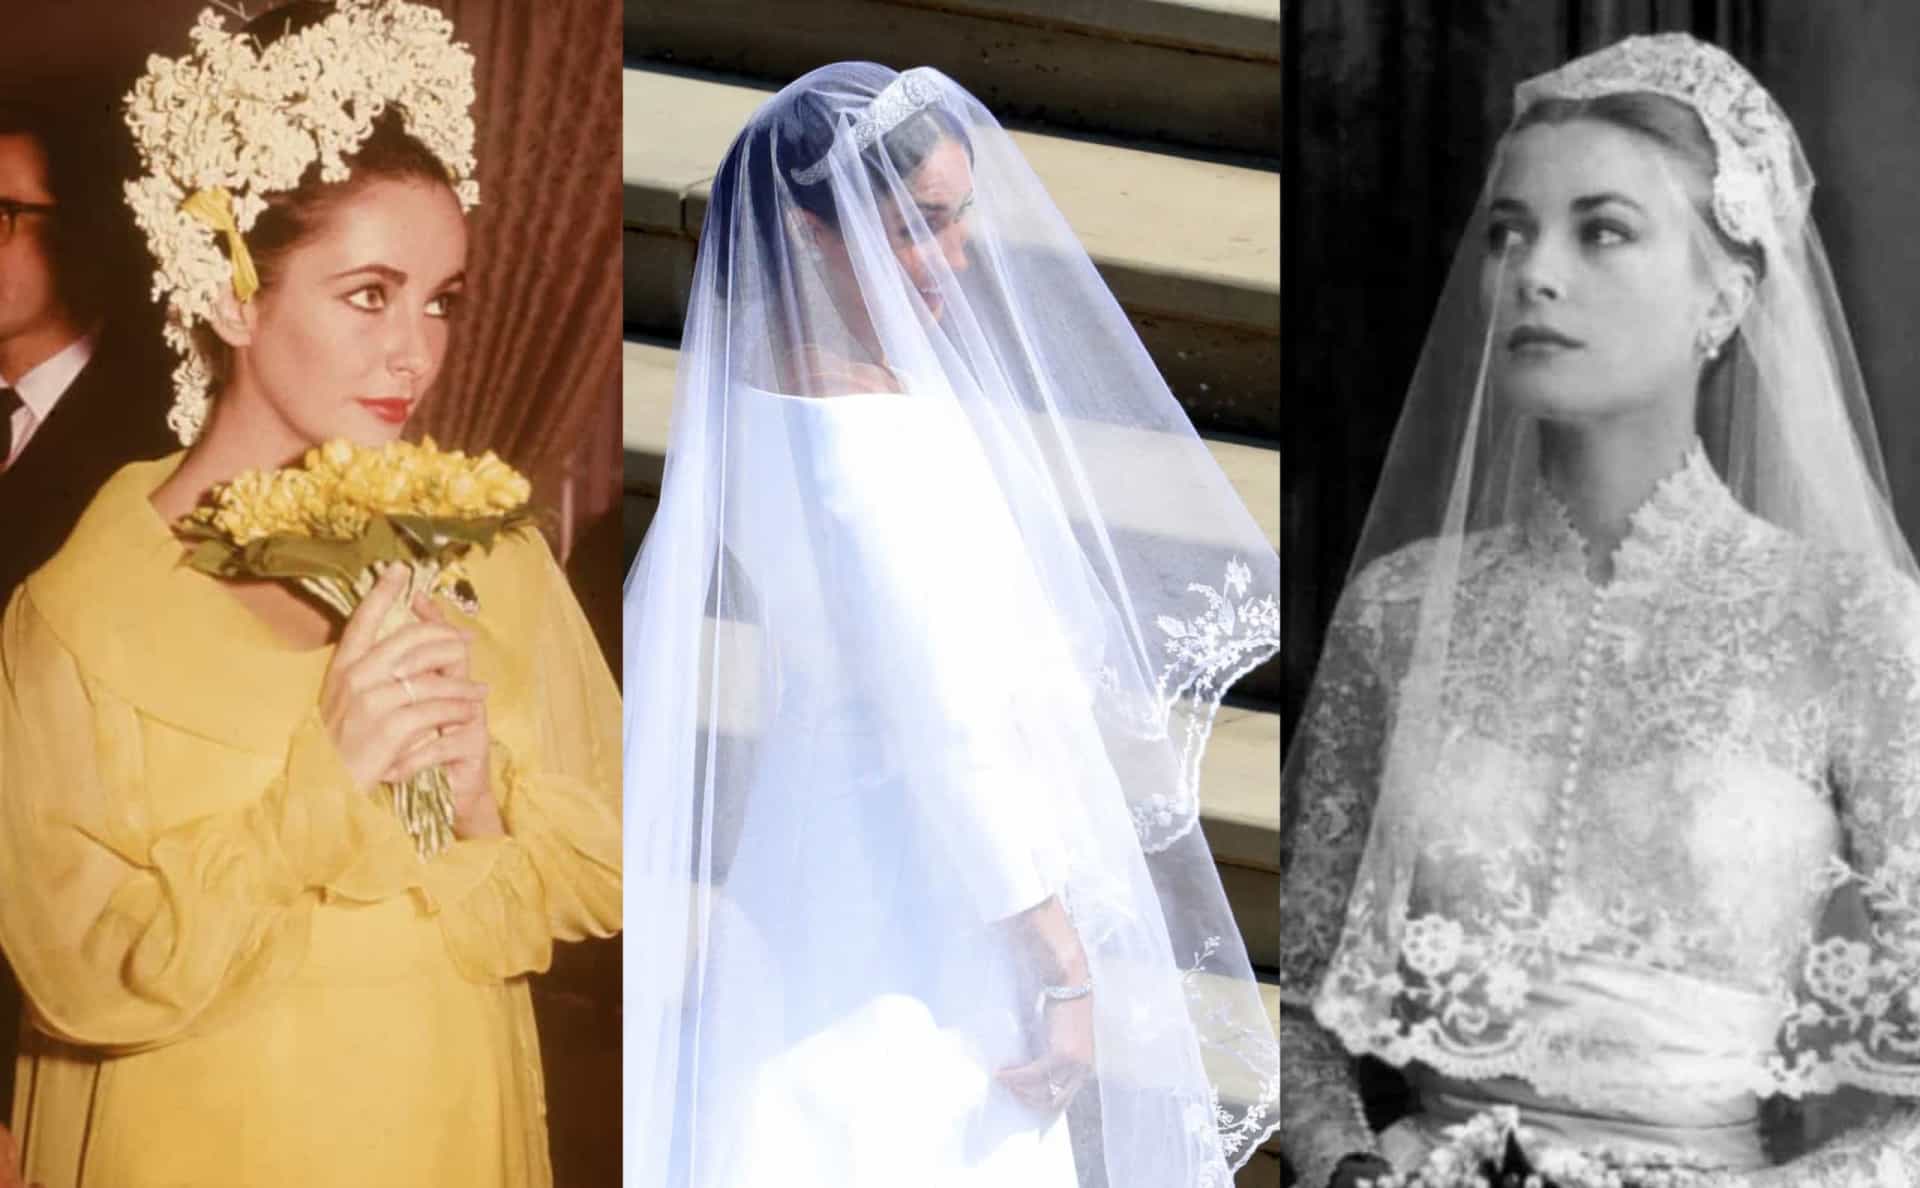 <p>Manche Ehen waren zwar ein Desaster, doch zumindest das Kleid war legendär! Werfen Sie einen Blick auf einige der <a href="https://de.starsinsider.com/celebrity/317324/die-legendaersten-hochzeitskleider-aller-zeiten">berühmtesten Hochzeitskleider der Geschichte</a>.</p>